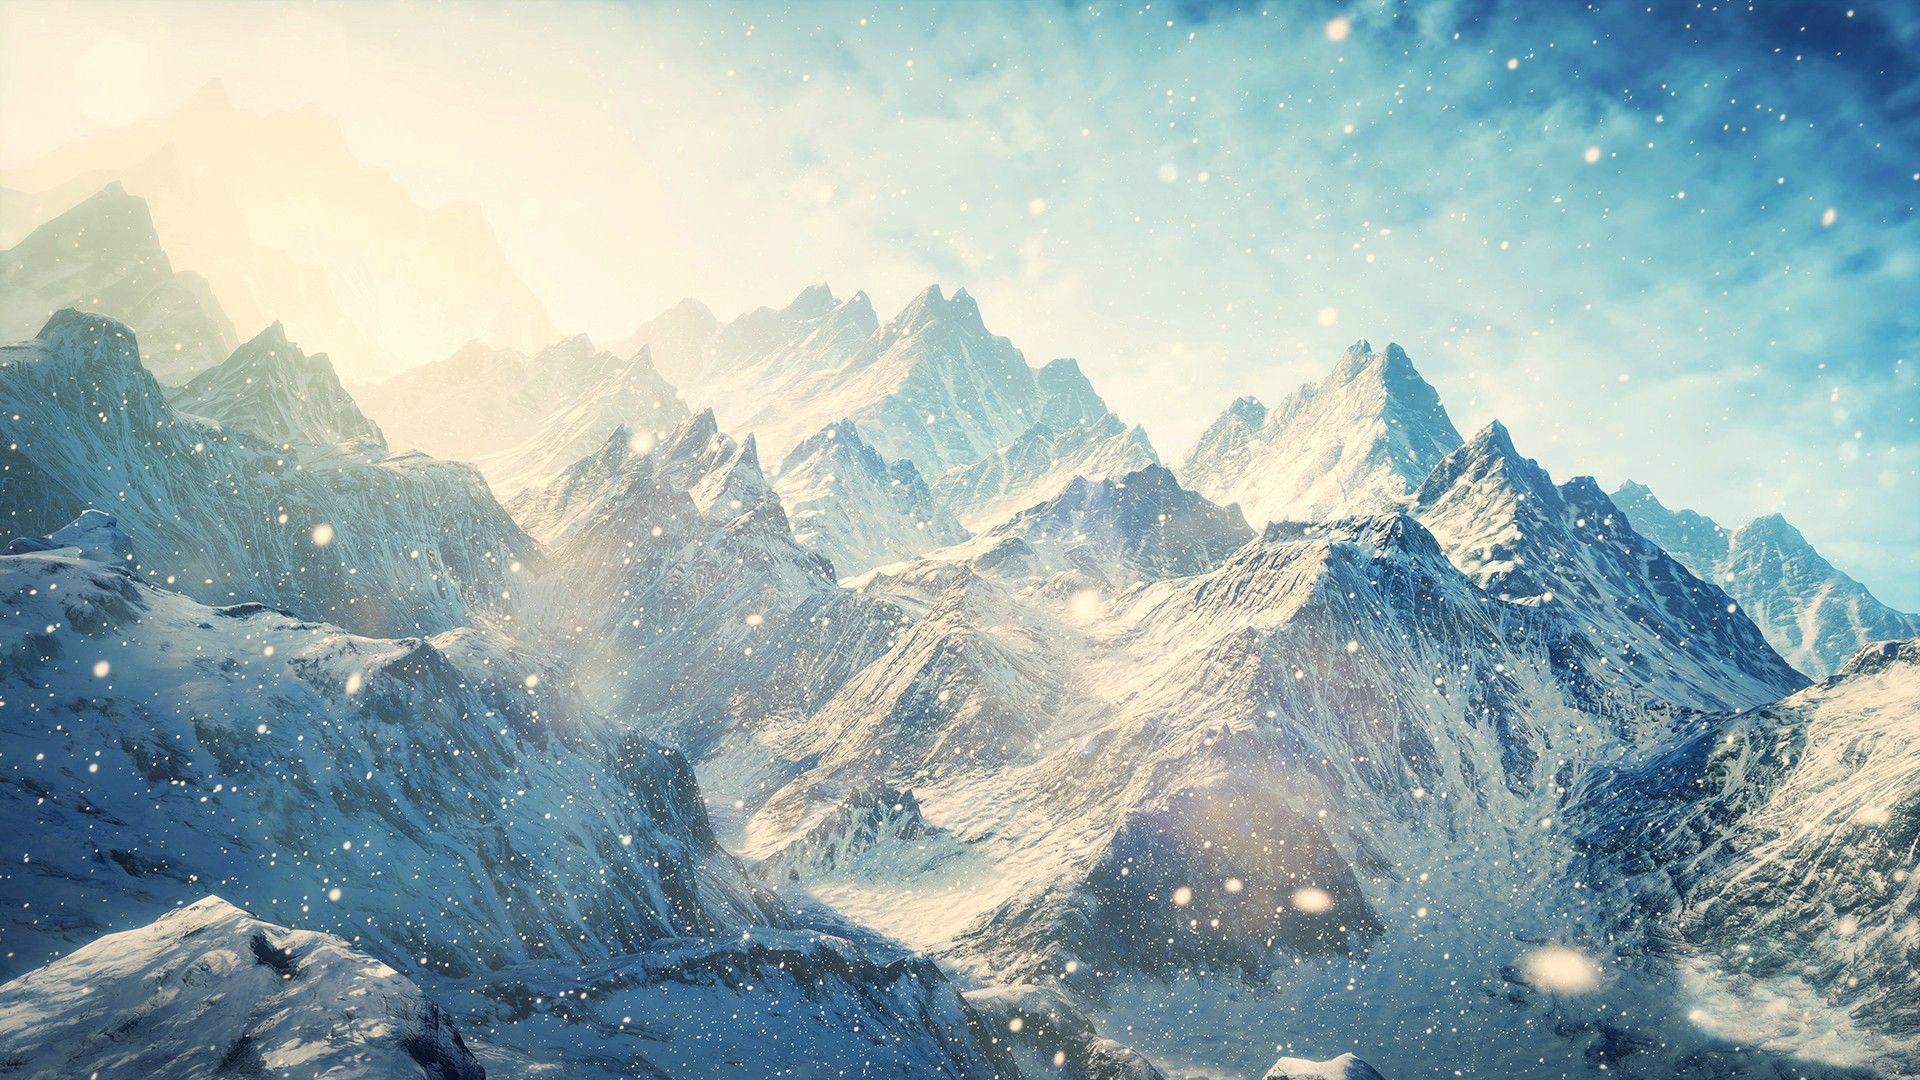 1920x1080 Ảnh miễn phí: Snow Covered Mountains - Tuyết, Mùa đông, Thiên nhiên